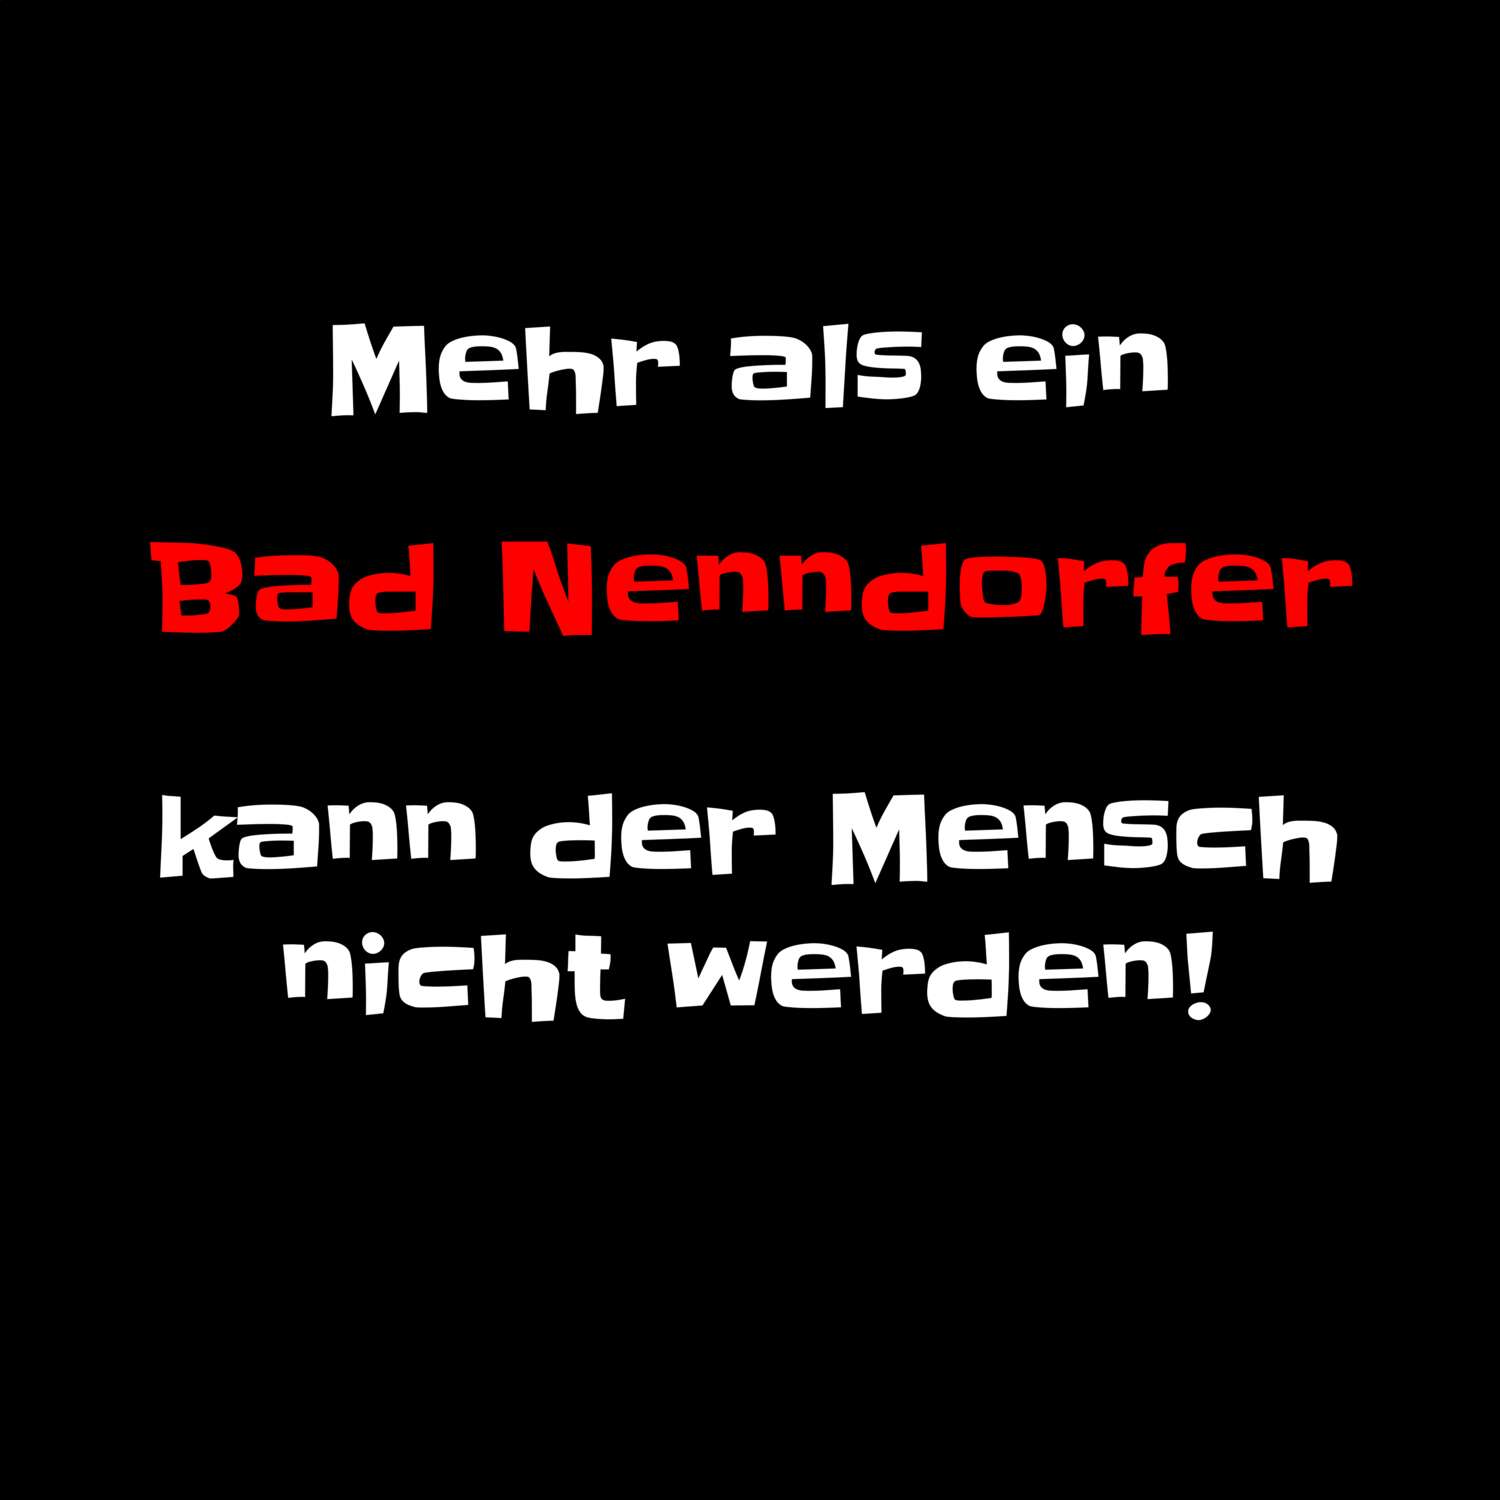 Bad Nenndorf T-Shirt »Mehr als ein«